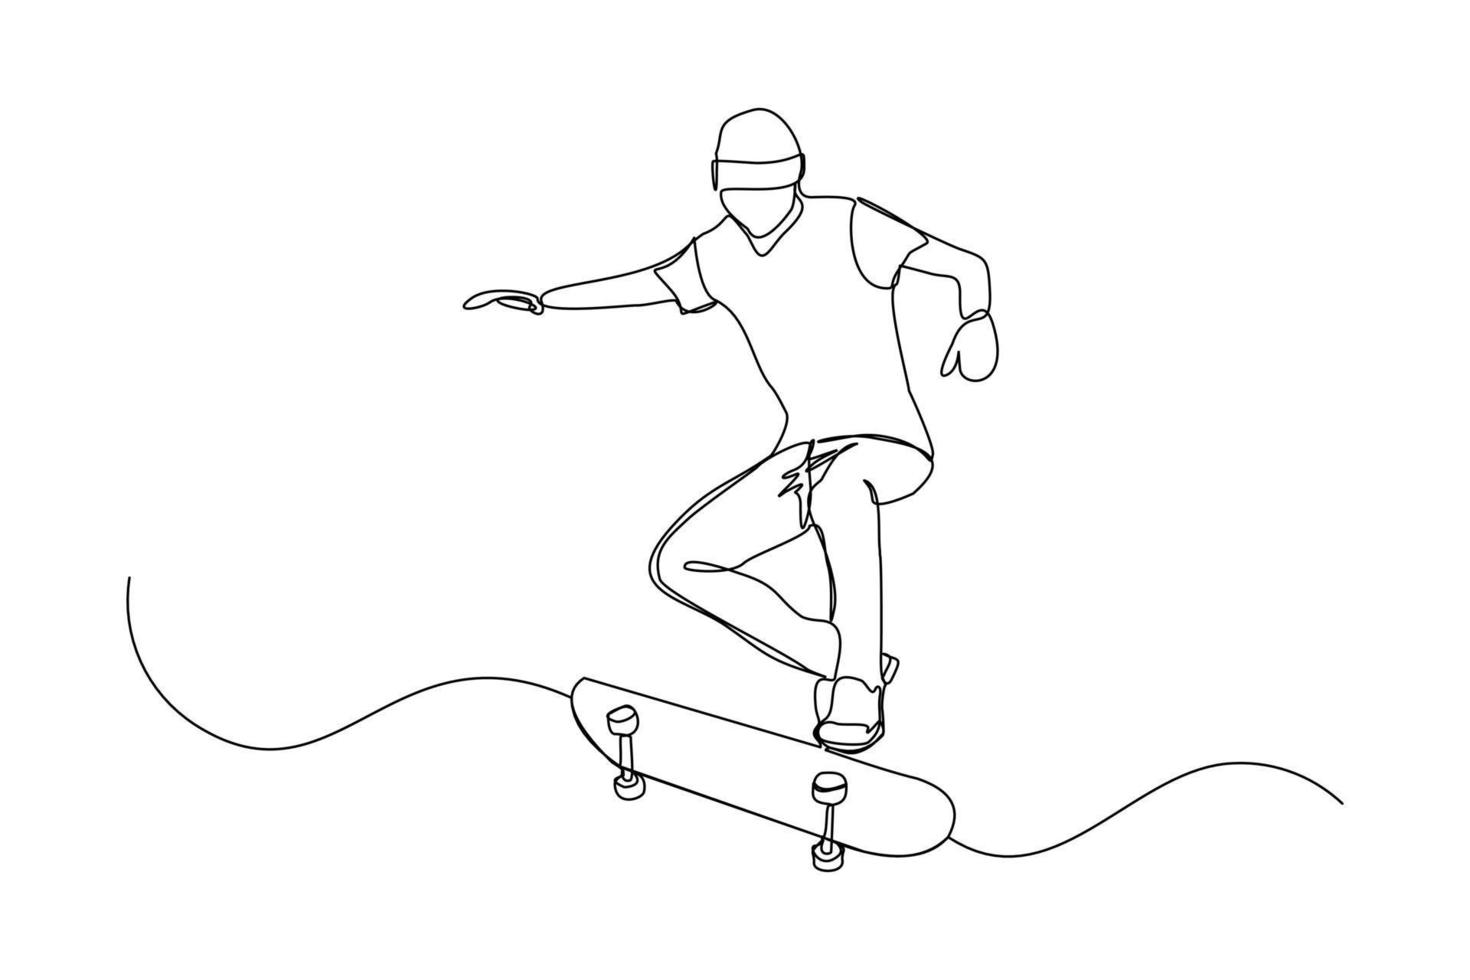 kontinuierliche Linienzeichnung eines jungen Mannes, der Skateboard spielt. einzelnes einzeiliges kunstsport-vektorillustrationsthema. Person spielen Spiel für Übung und Hobby isoliert auf weißem Hintergrund vektor